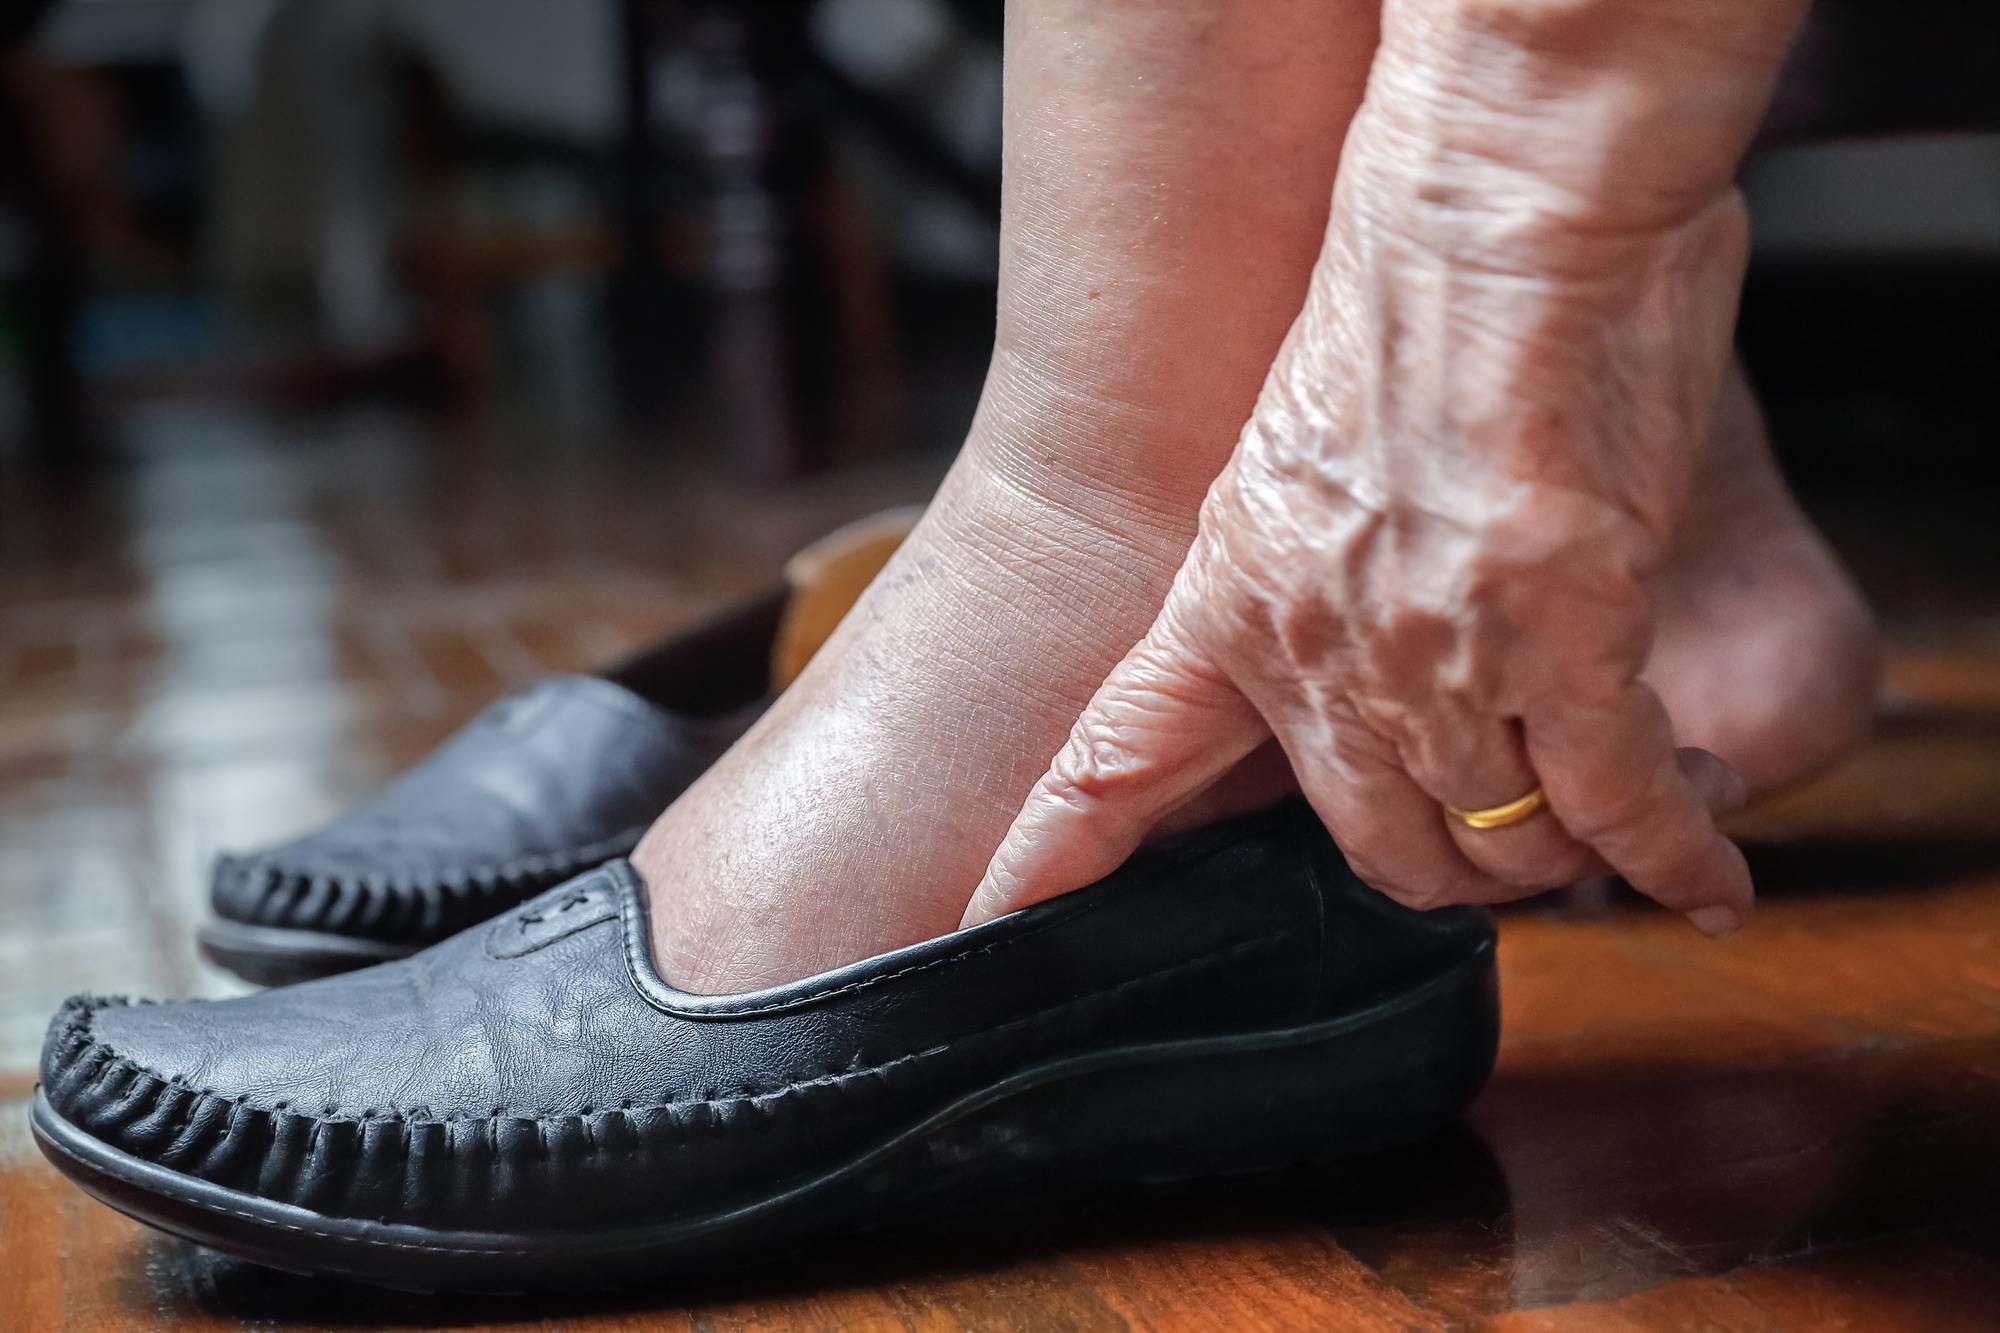 Elderly woman with swollen feet